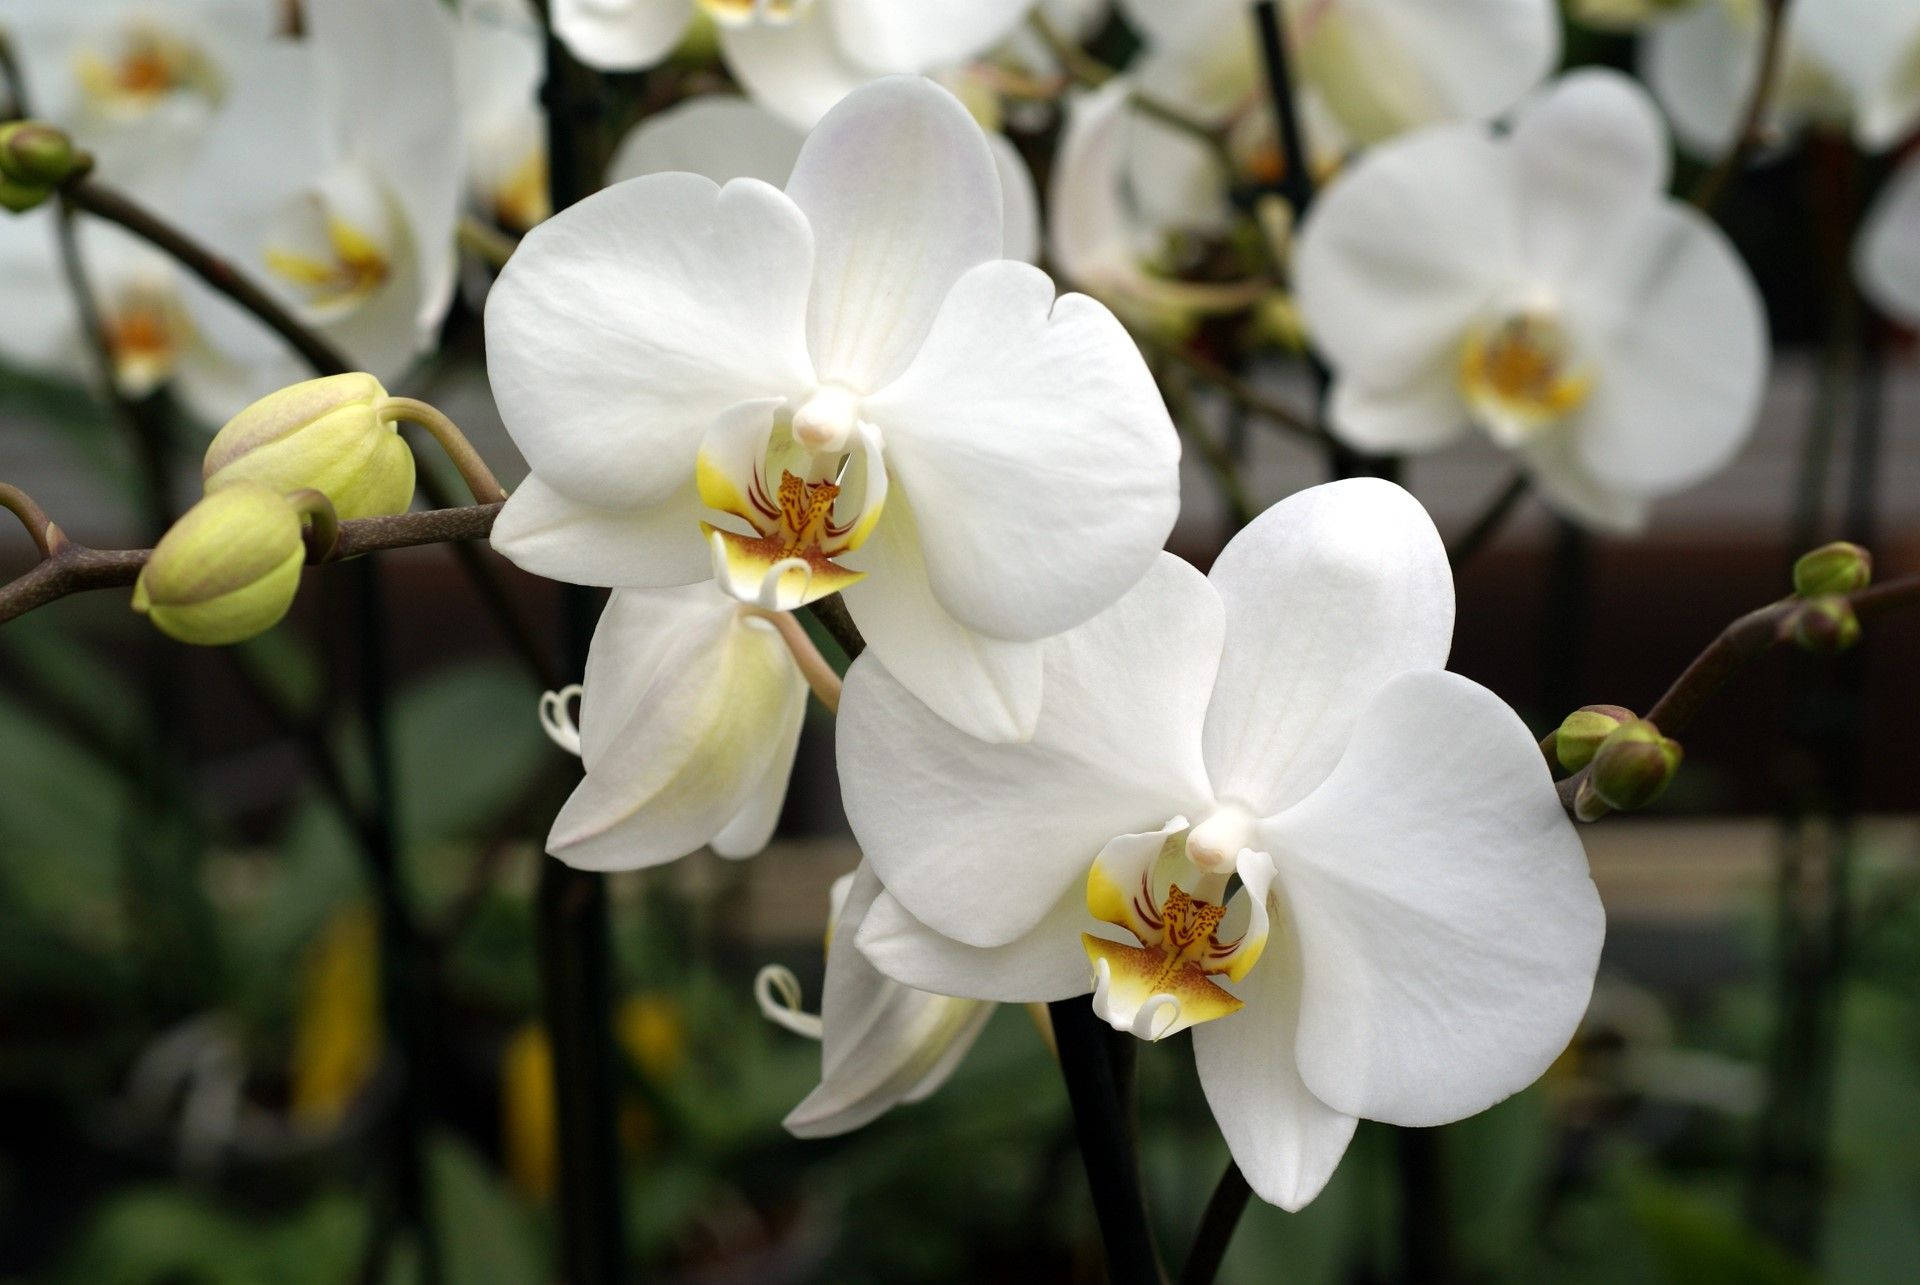 White Orchid On Dark Brown Stem